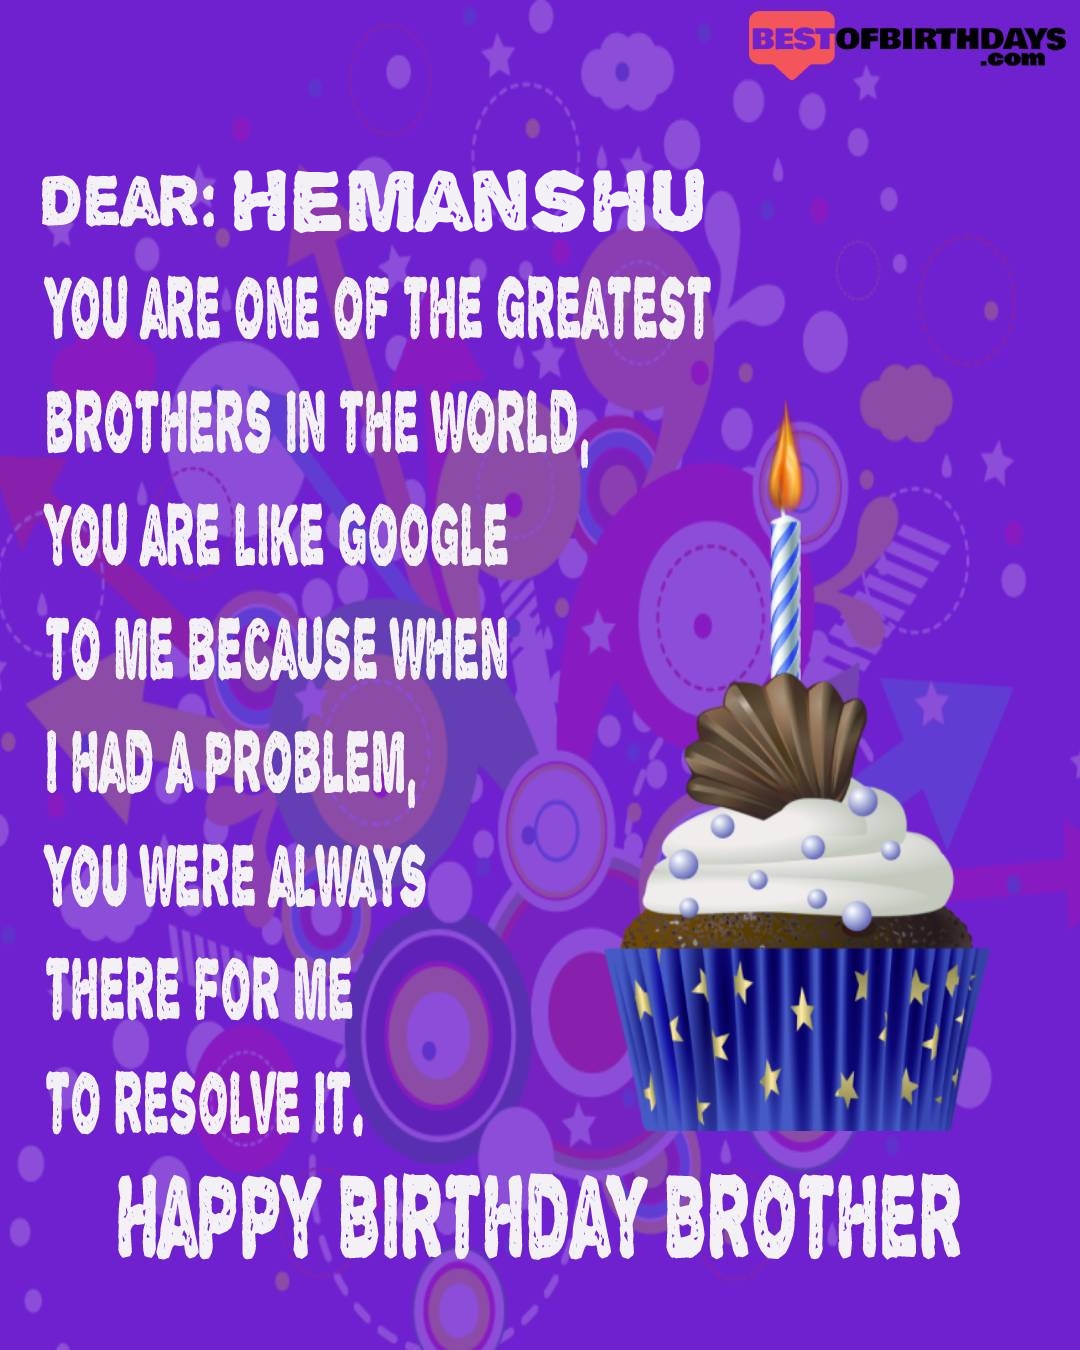 Happy birthday hemanshu bhai brother bro